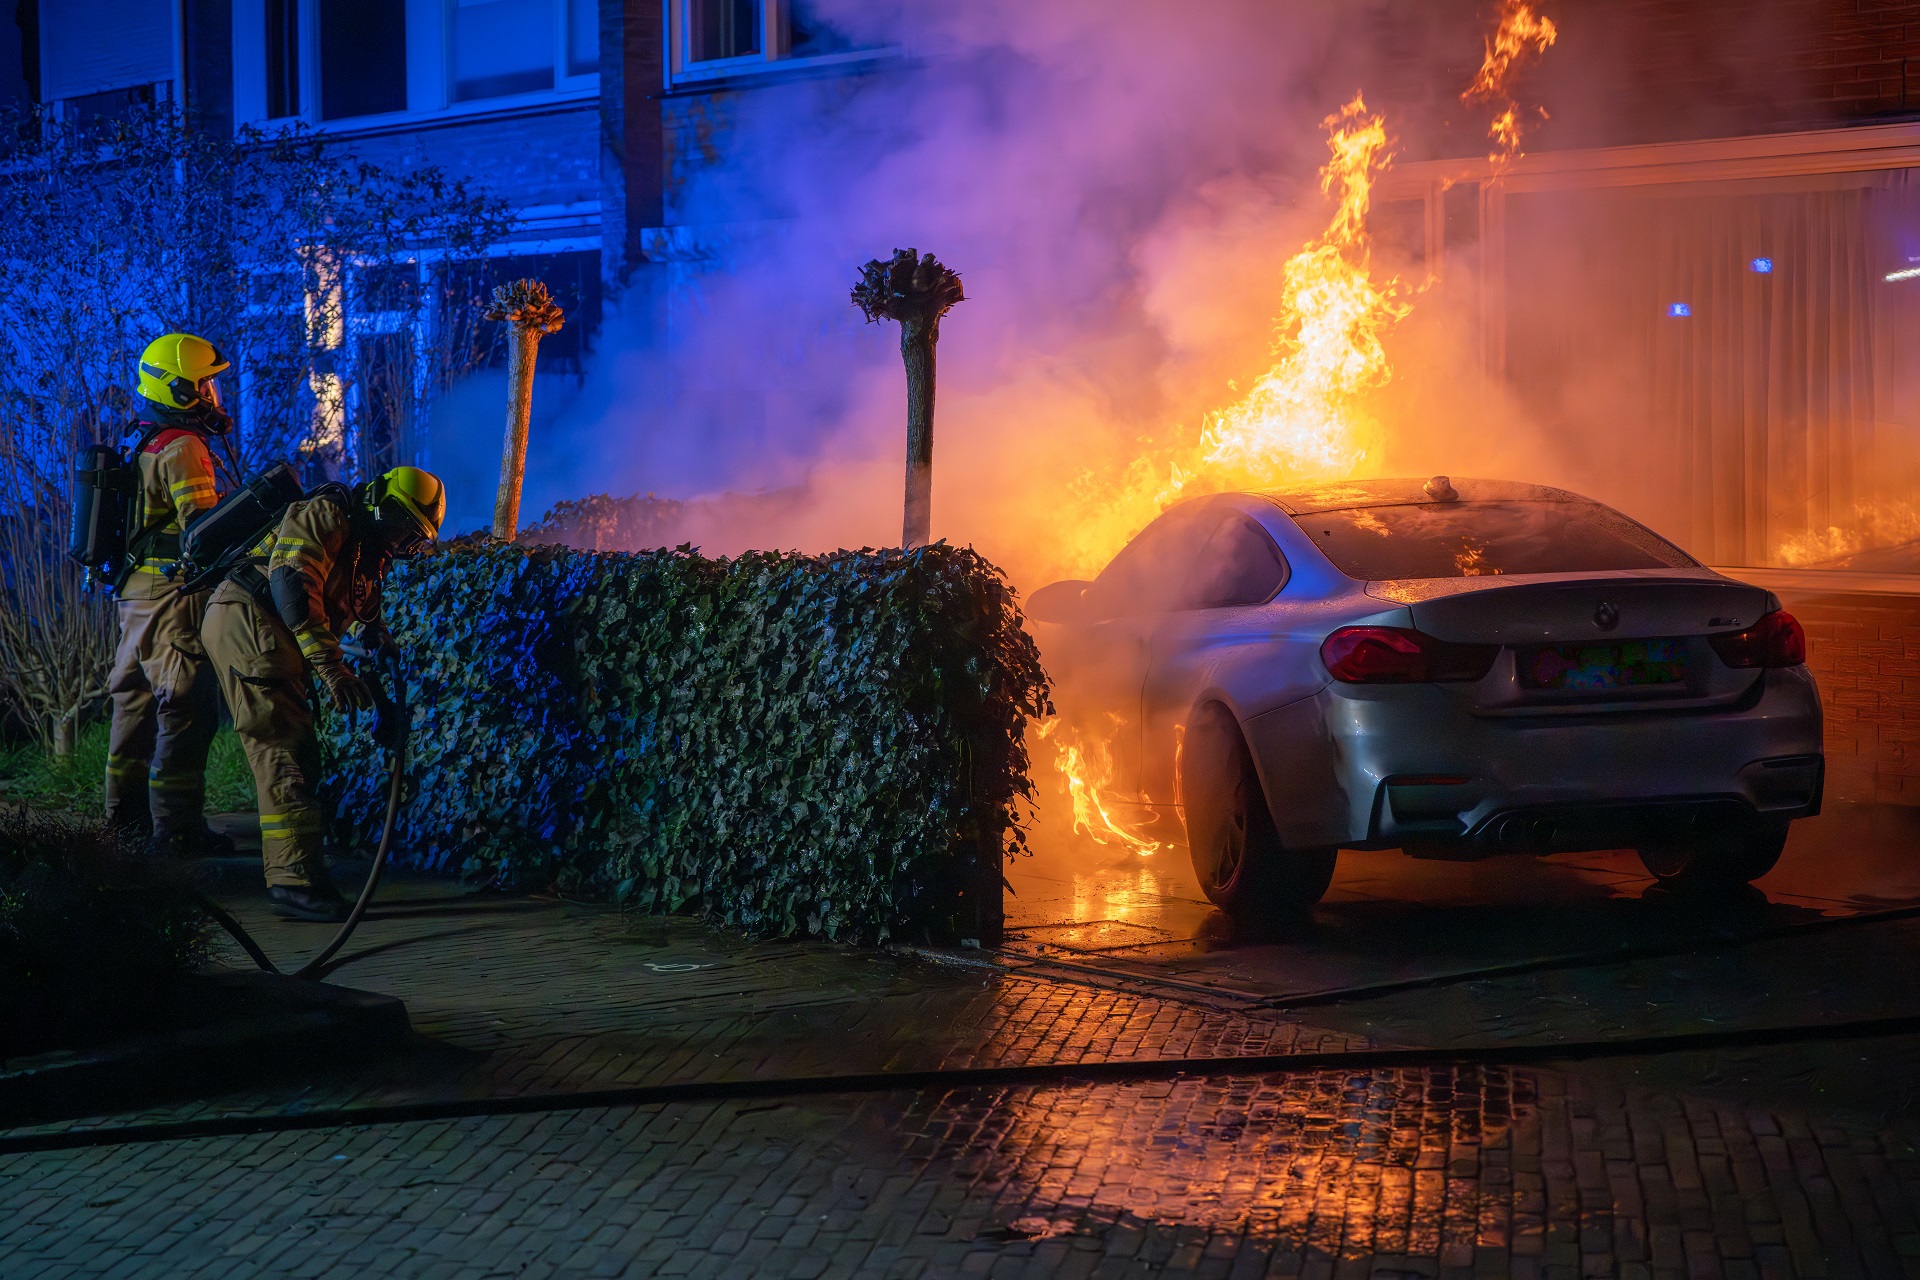 Autobrand slaat over op woning, politie vermoedt brandstichting